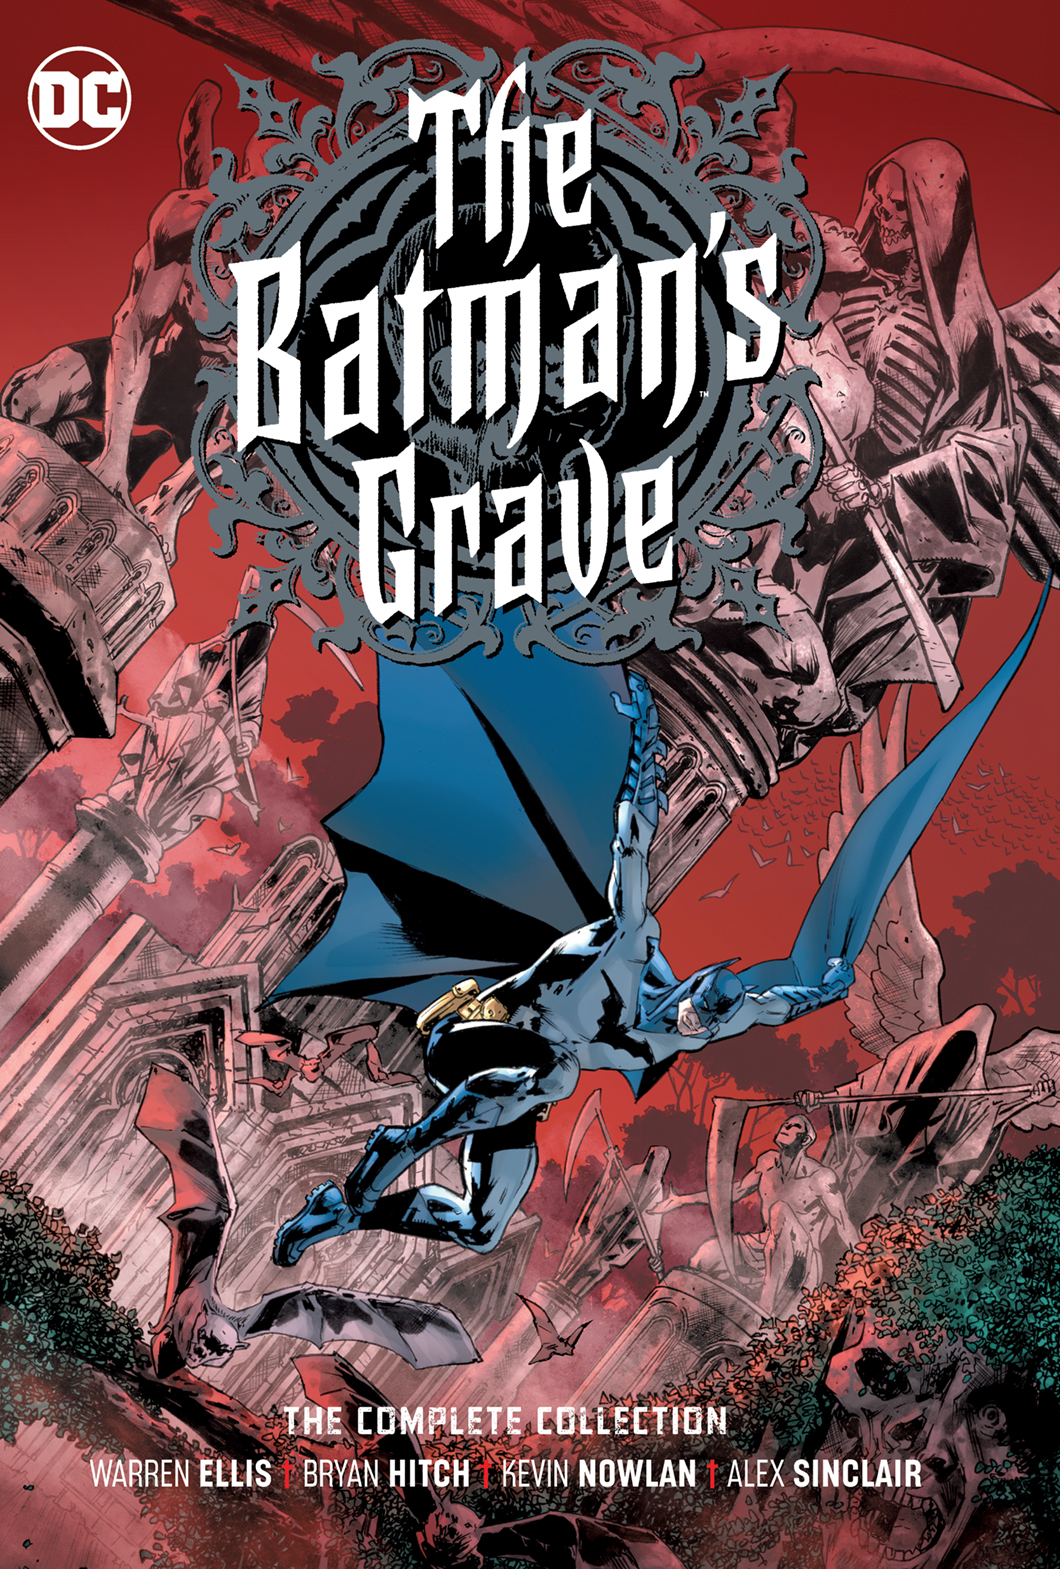 Batmans Grave The Complete Collection Graphic Novel